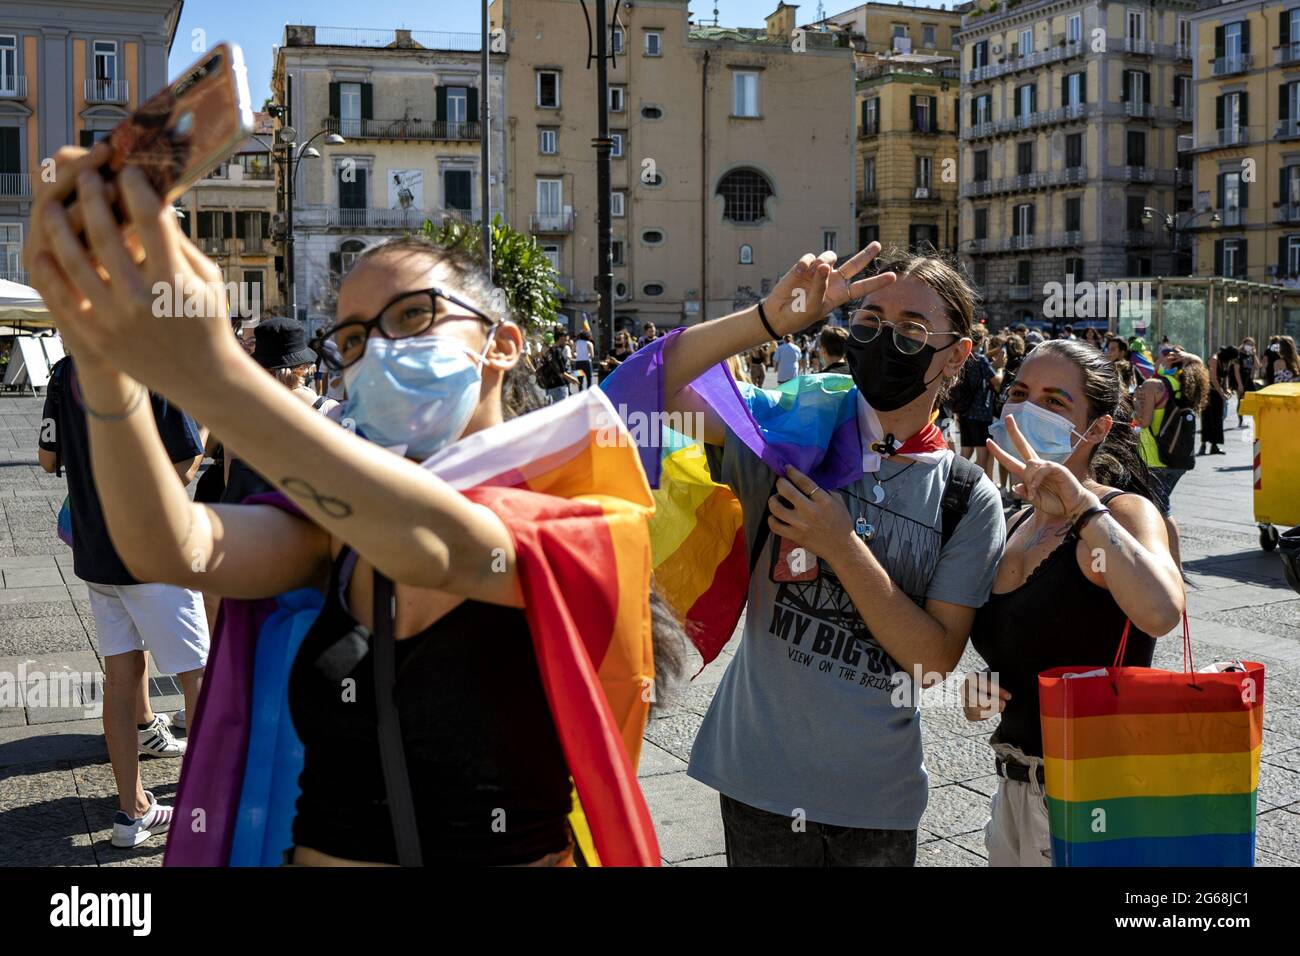 Italia - Napoli Pride 2021 senza parata per il Covid, ma è un grande successo di musica e colori. Entusiasmo, sorrisi, gioia, voglia di esserci e di condividere qualcosa di importante: 25 anni di battaglie e ancora tanta strada fare contro la violenza, il razzismo, l'isolamento, il bullismo. La città accoglie con grande entusiasmo il Naples Pride 2021 auf der Piazza Dante. Tanti Cartelli e striscioni in esposizione. In piazza, oltre alle associazioni che si battono per i diritti LGBT e alle famiglie Arcobaleno, c'erano anche tanti giovani che hanno voluto dimostrare la loro vicinanza a questi te Stockfoto